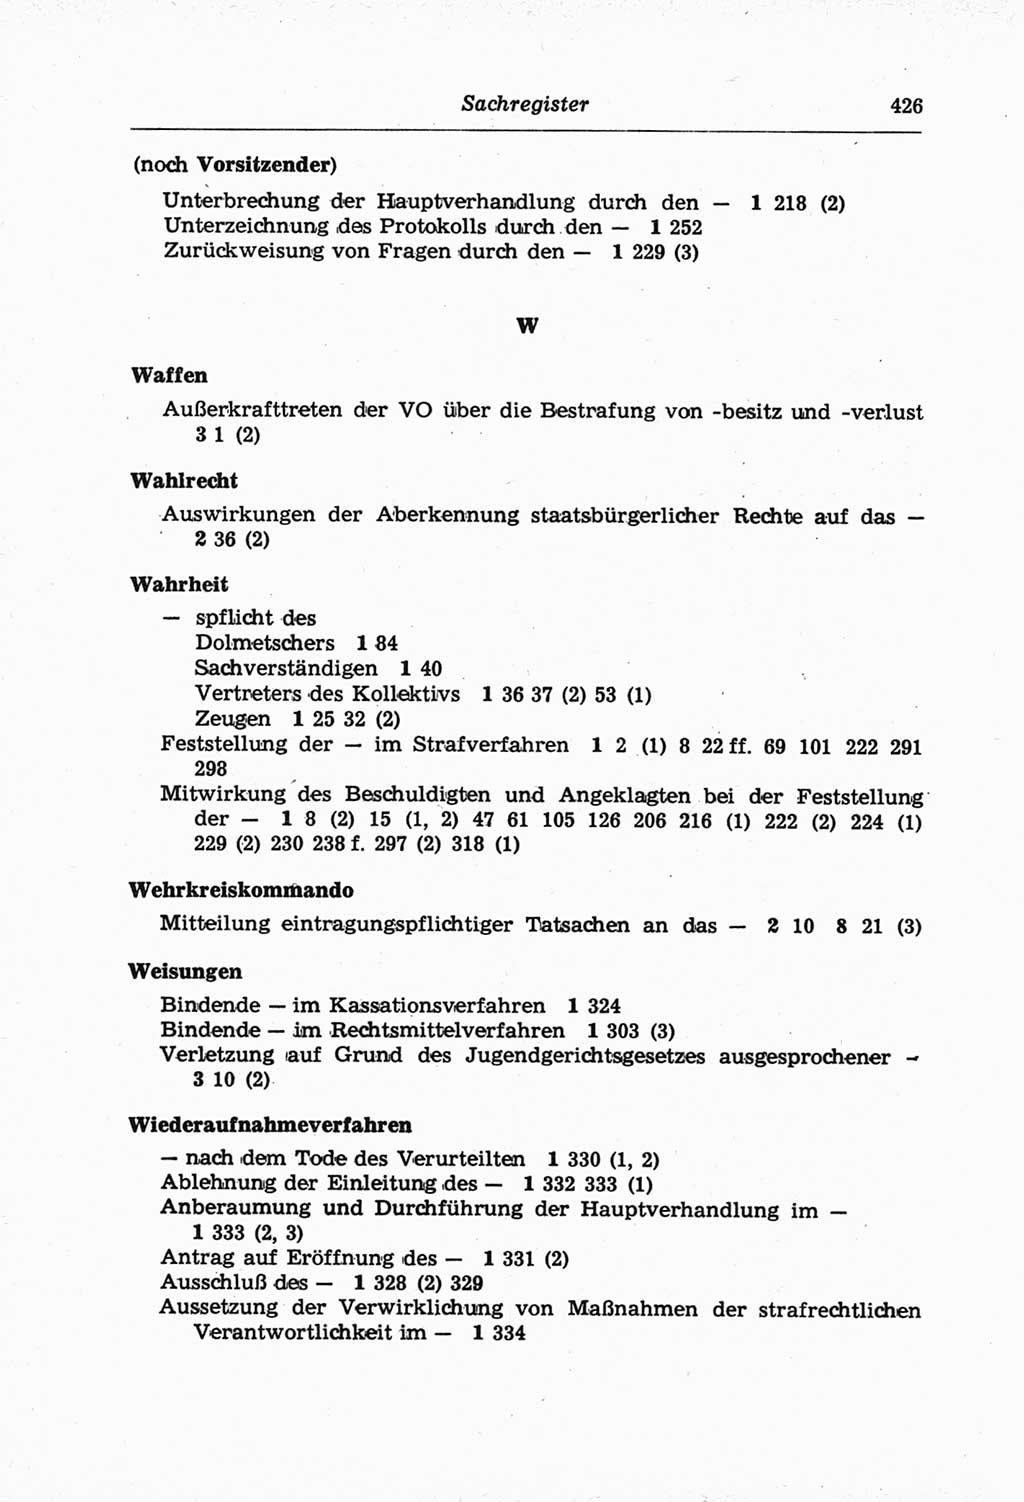 Strafprozeßordnung (StPO) der Deutschen Demokratischen Republik (DDR) und angrenzende Gesetze und Bestimmungen 1968, Seite 426 (StPO Ges. Bstgn. DDR 1968, S. 426)